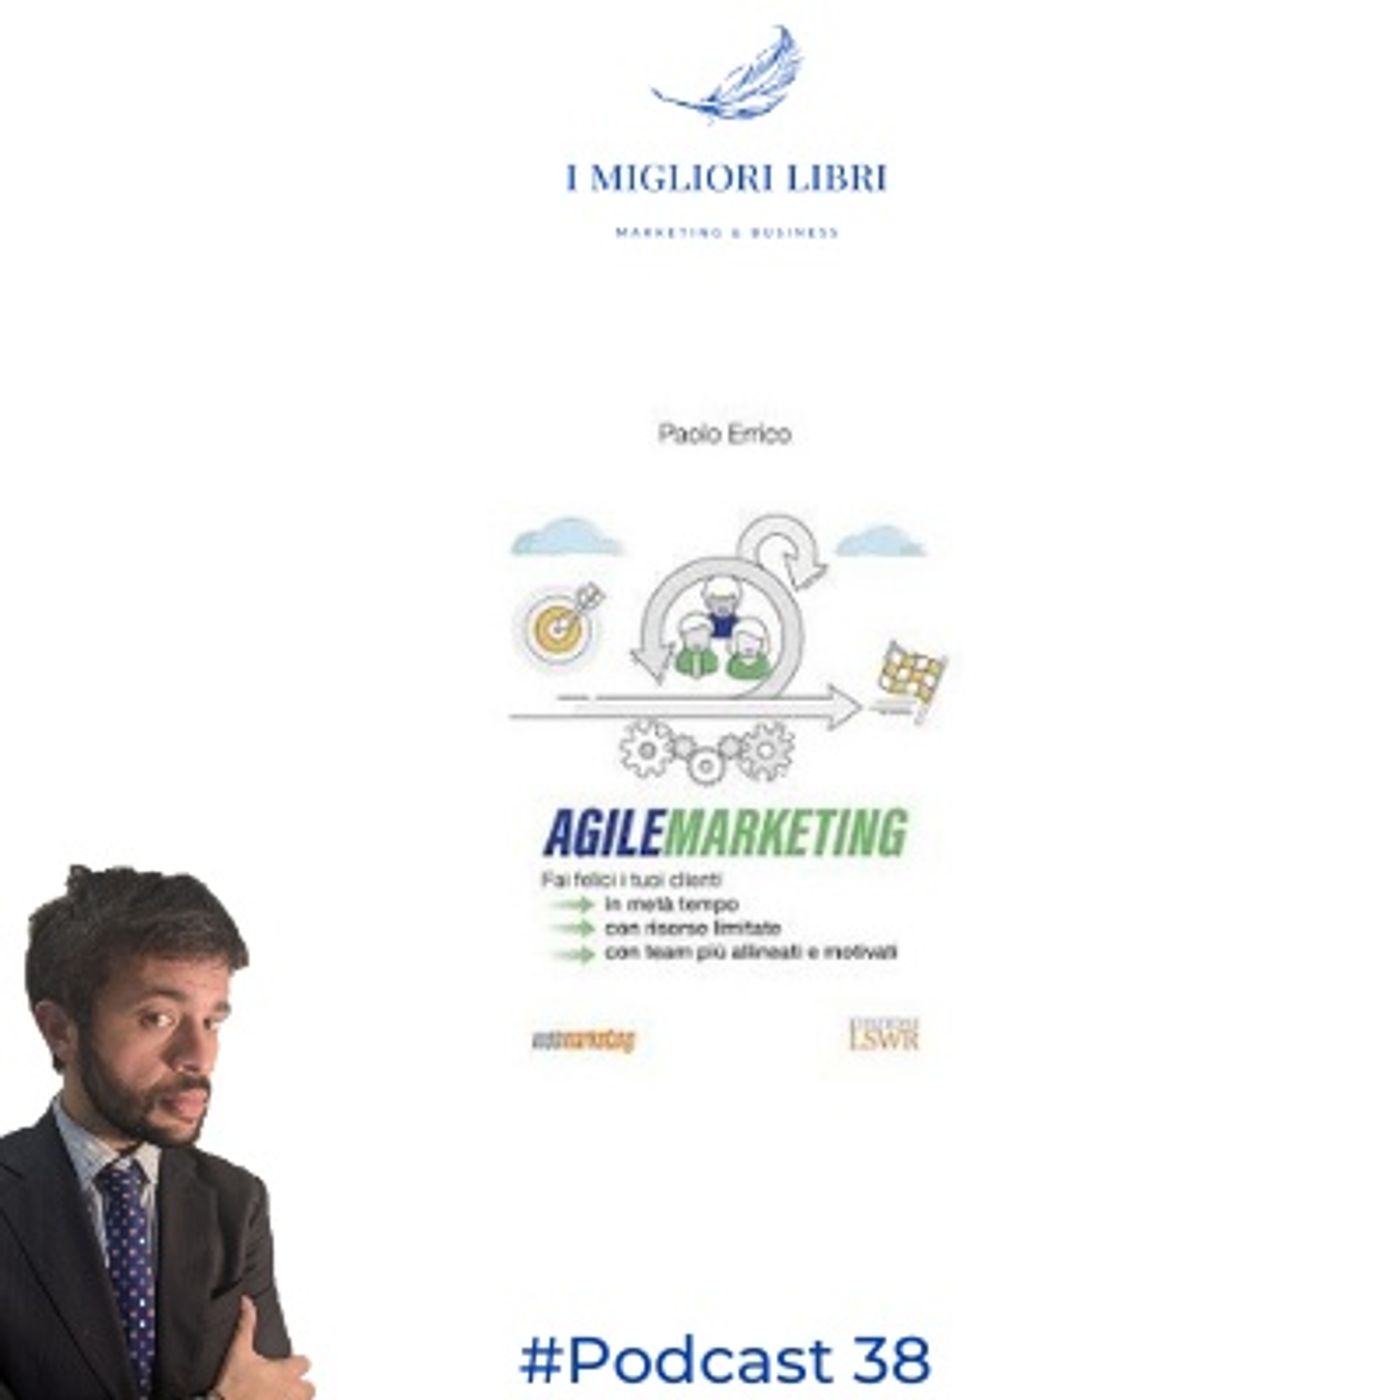 Episodio 38 "Agile Marketing" di P.Errico- I migliori libri Marketing & Business